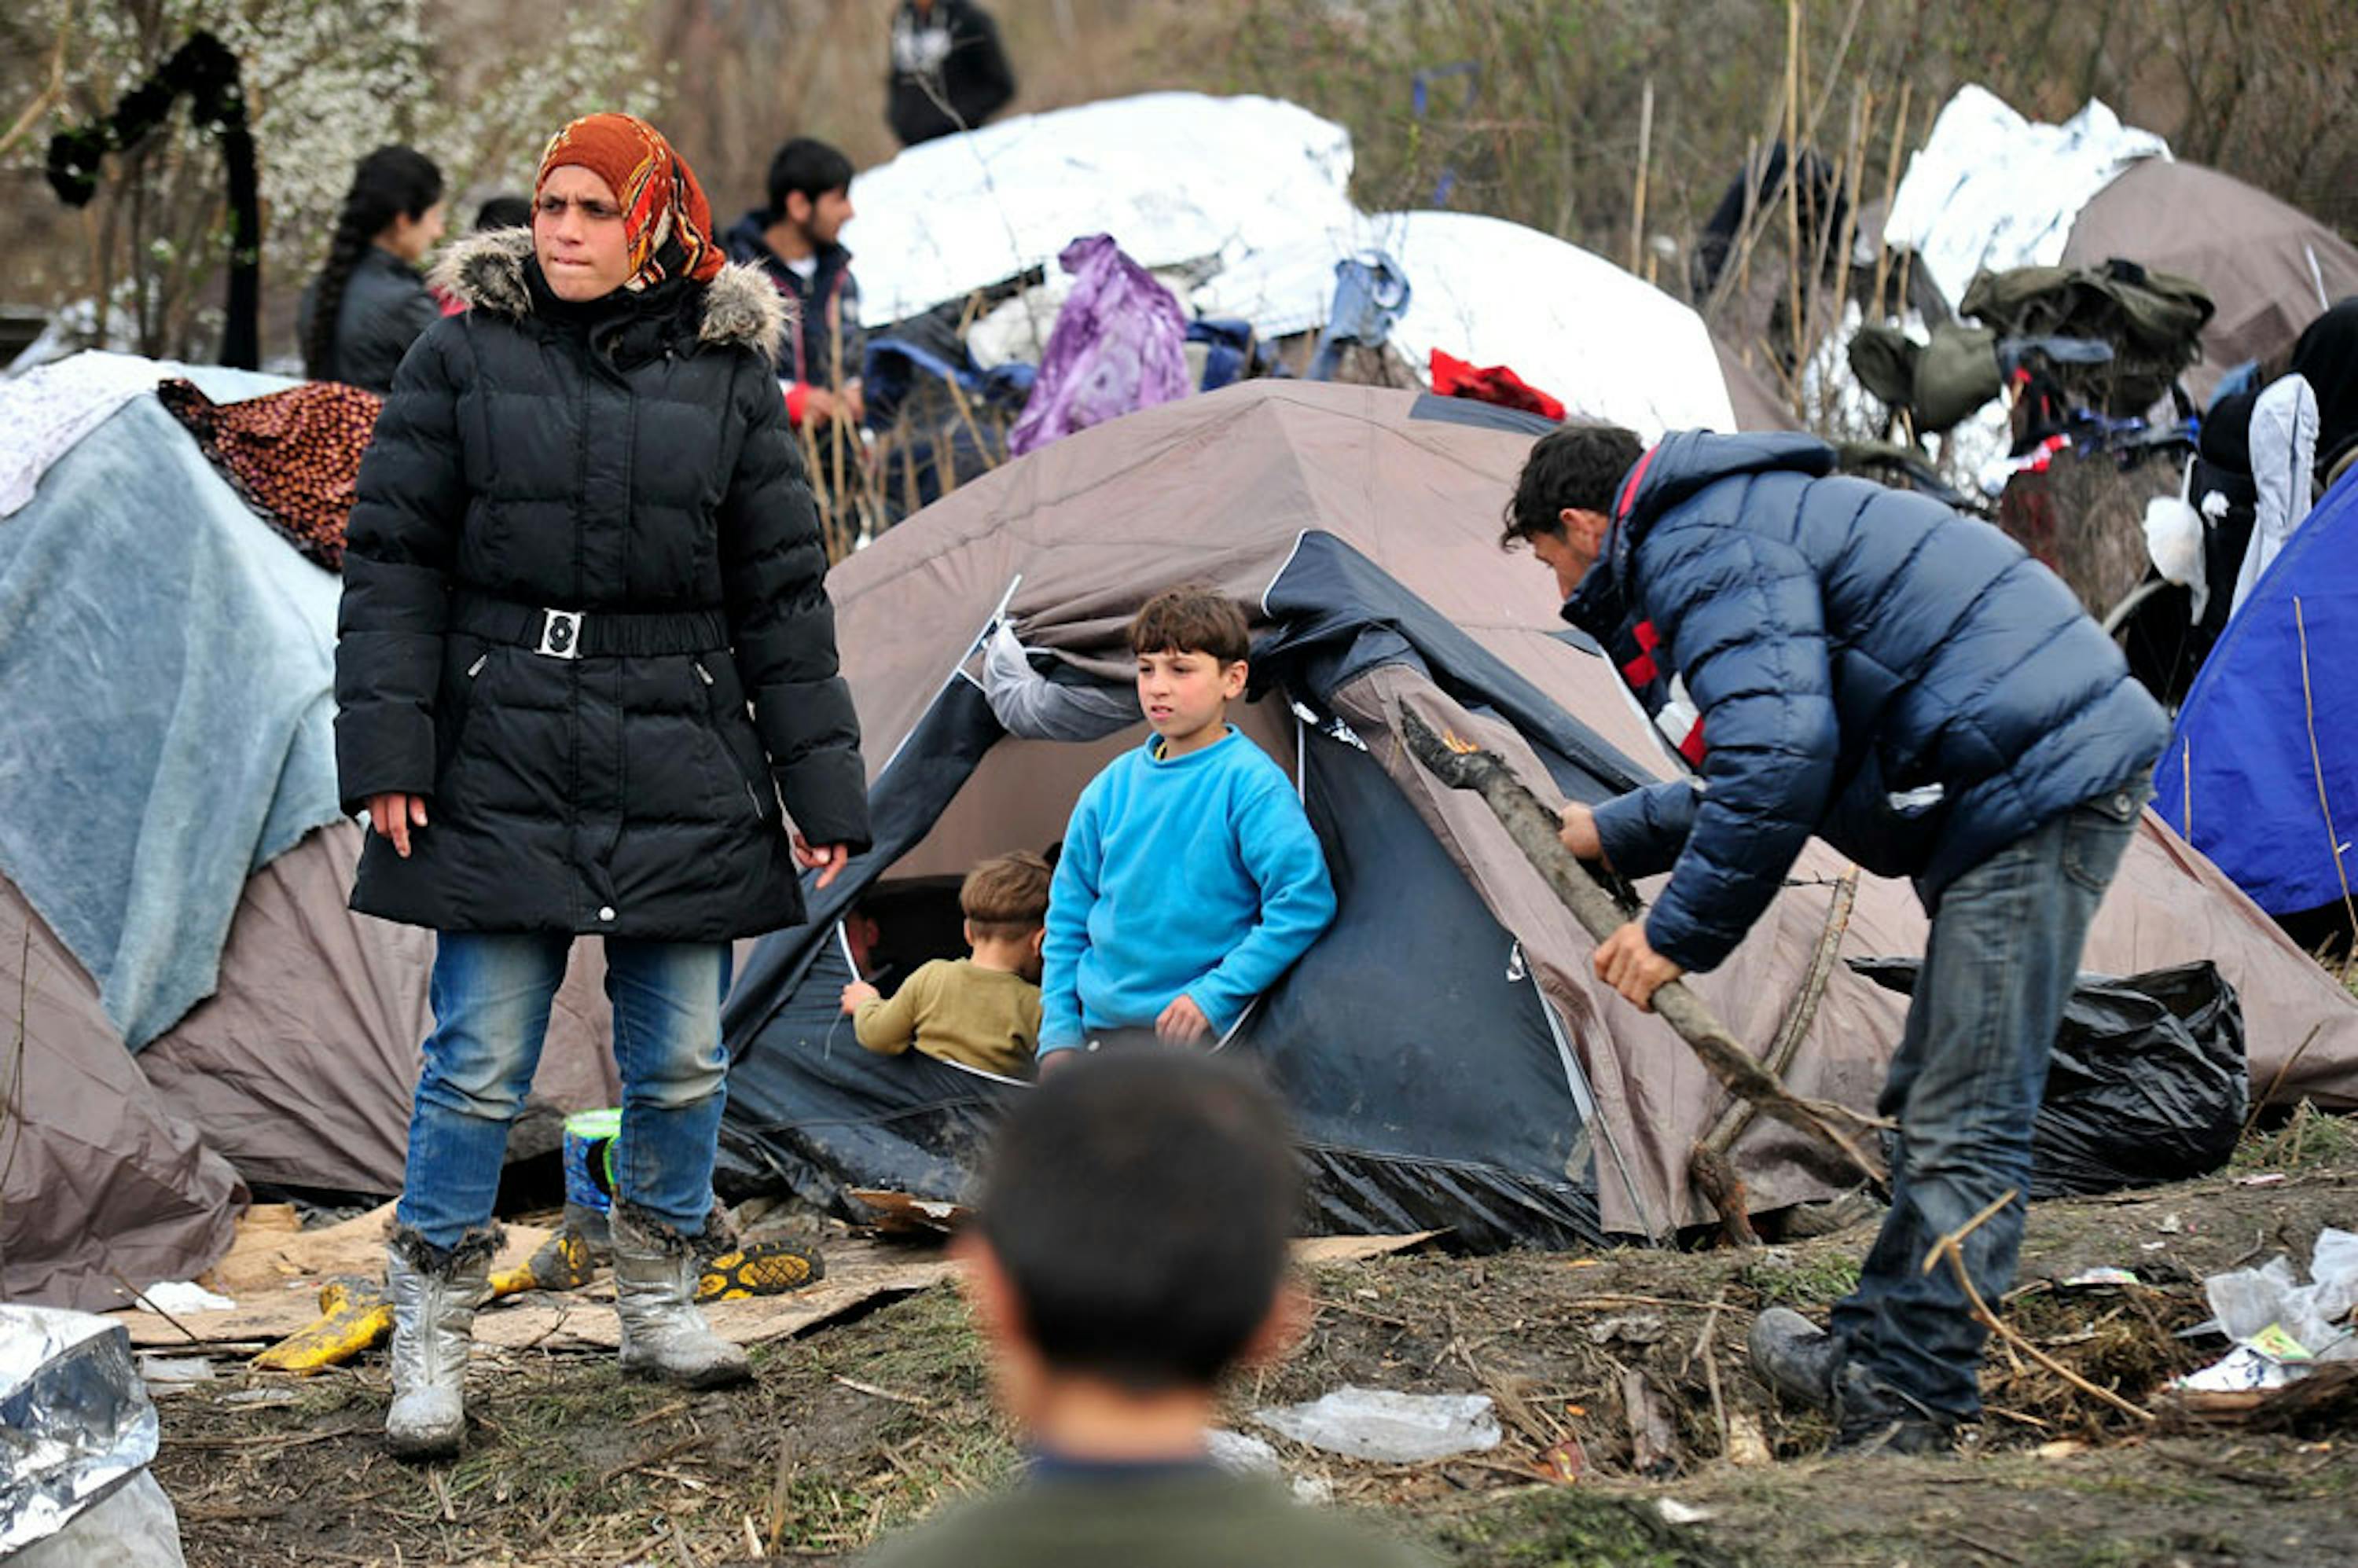 Minori e adulti al confine tra Serbia e ex repubblica jugoslava di Macedonia - ©UNICEF/UN013594/Georgiev